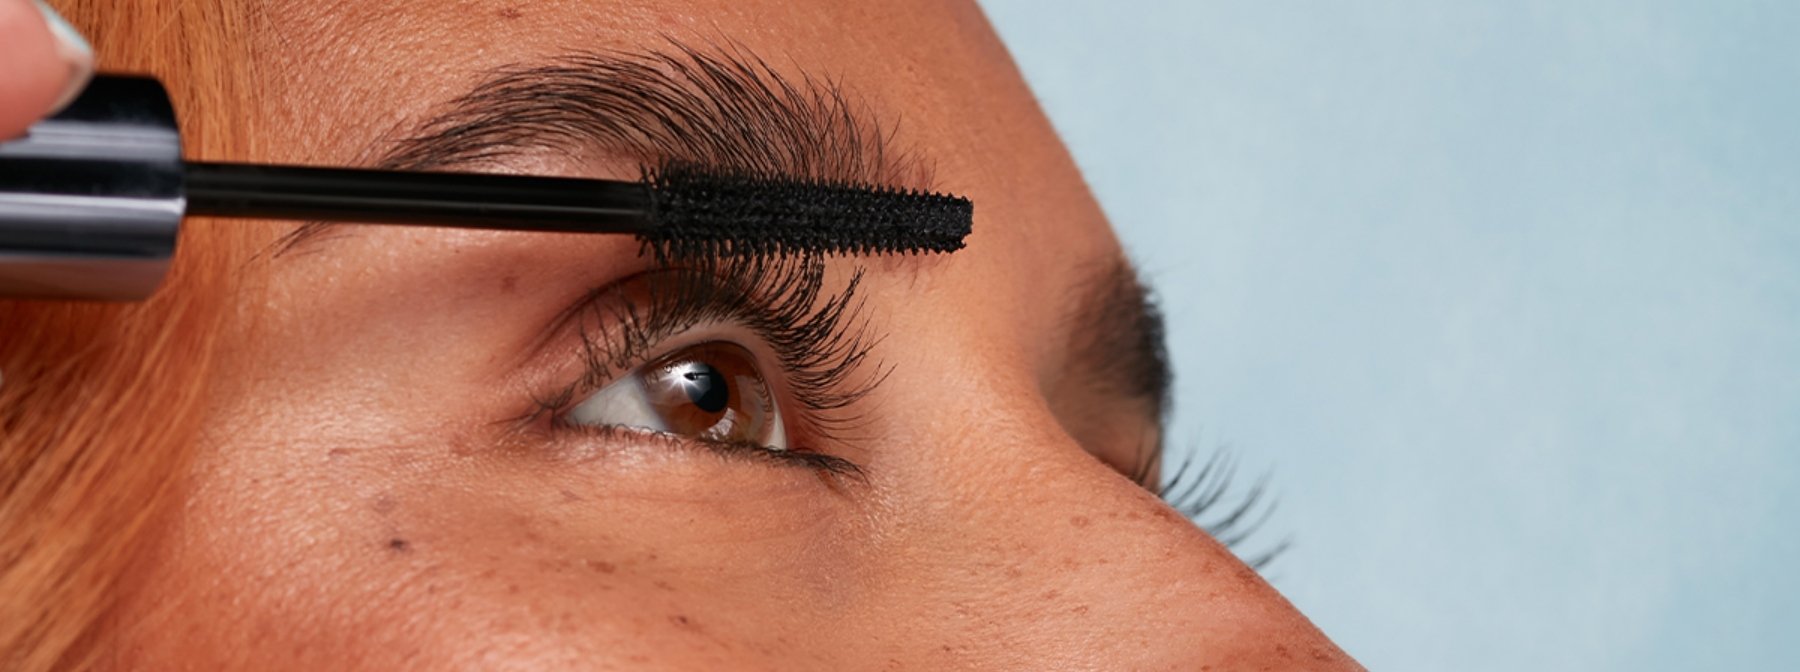 How to Make Eyelashes Look Longer with Mascara